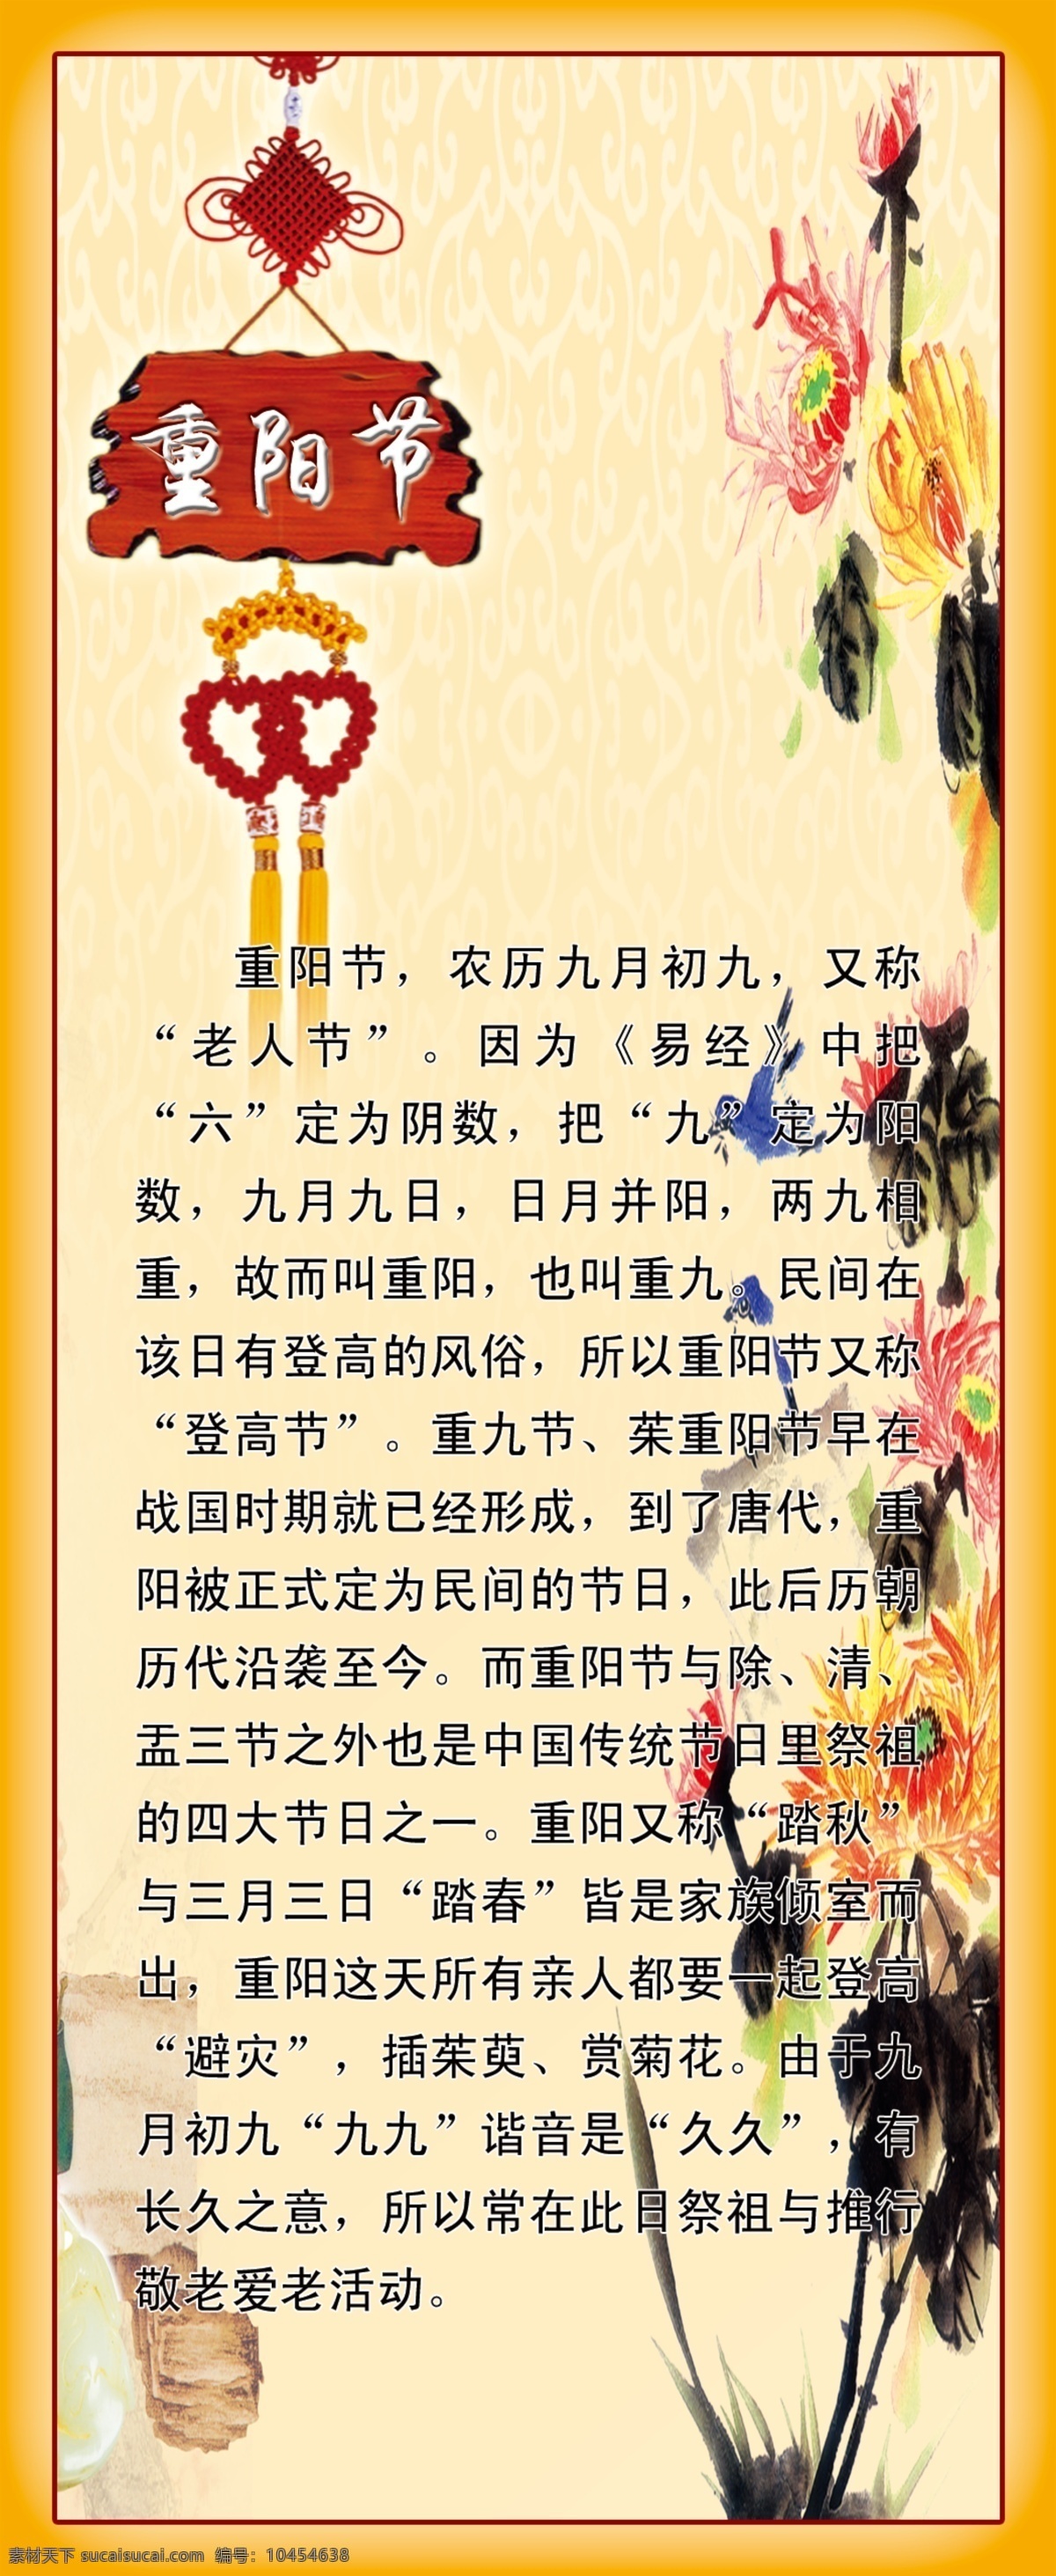 中国 节日 文化 重阳节 中国节日文化 菊花 学校展板 走廊文化 展板模板 黄色